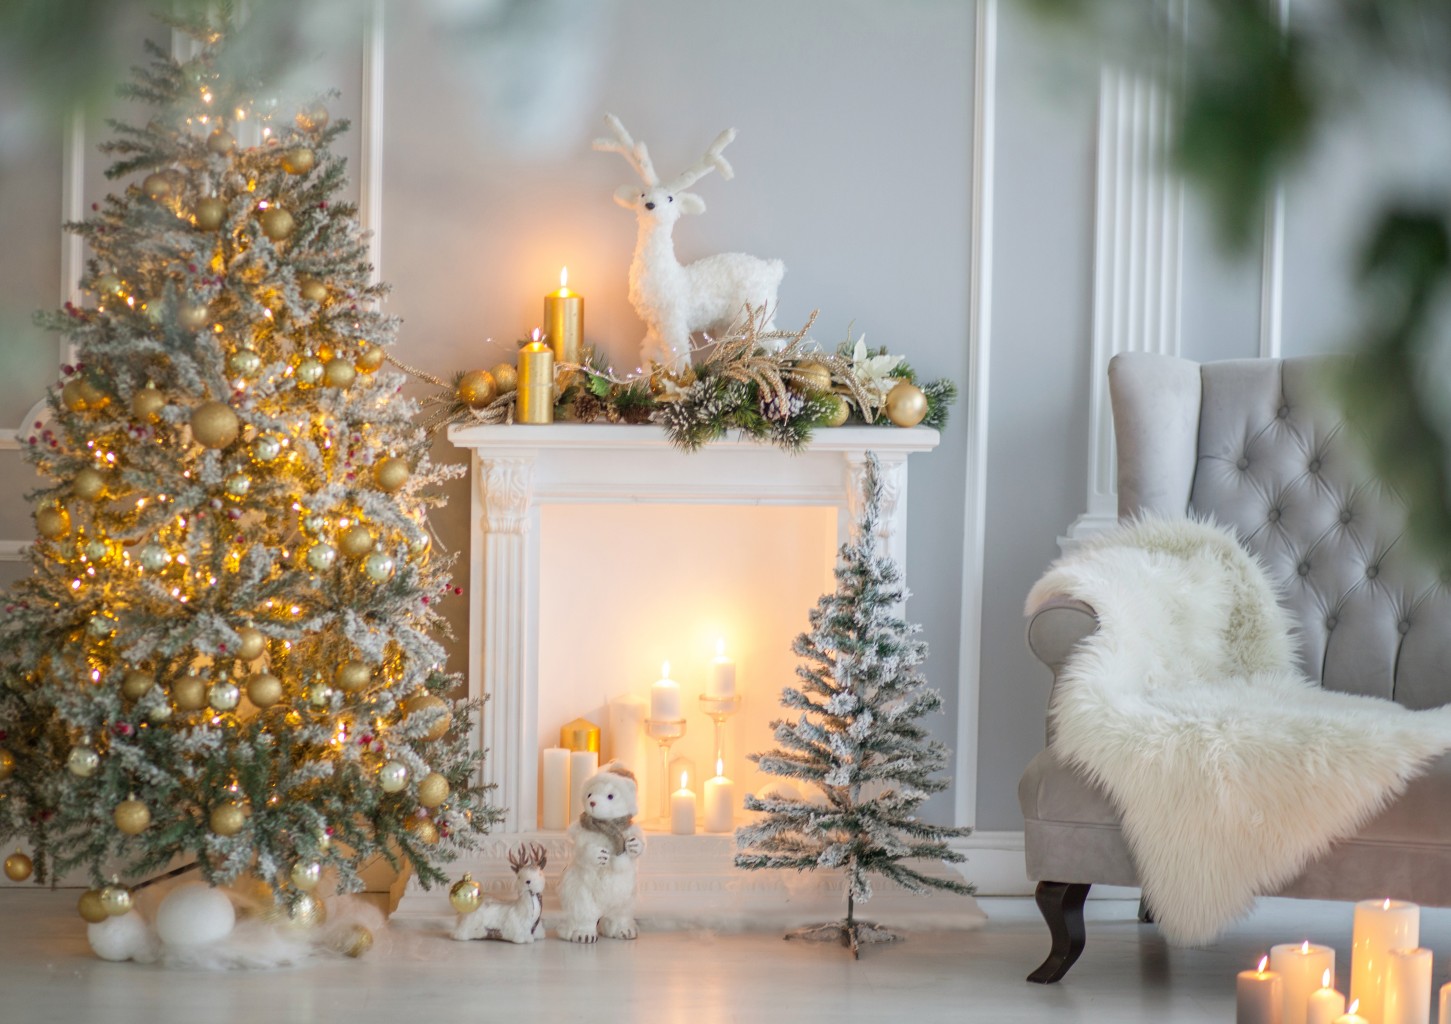 Ziemassvētku fotosesija ar tematiskām dekorācijām (1h)